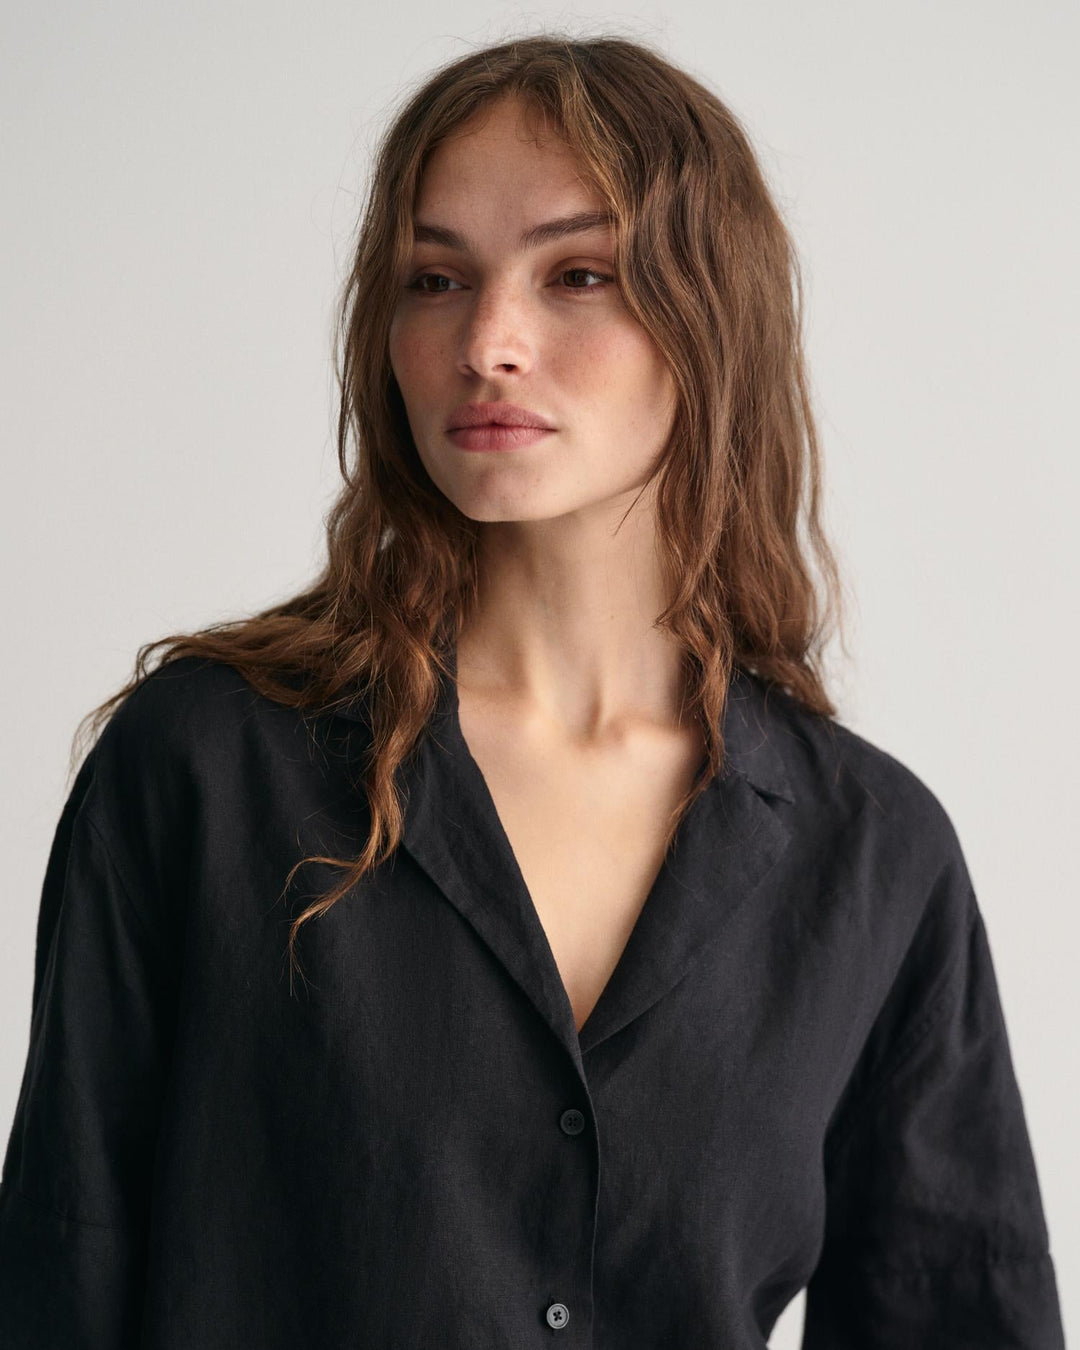 Relaxed Fit Linen Short Sleeve Shirt Ebony Black | Skjorter og bluser | Smuk - Dameklær på nett